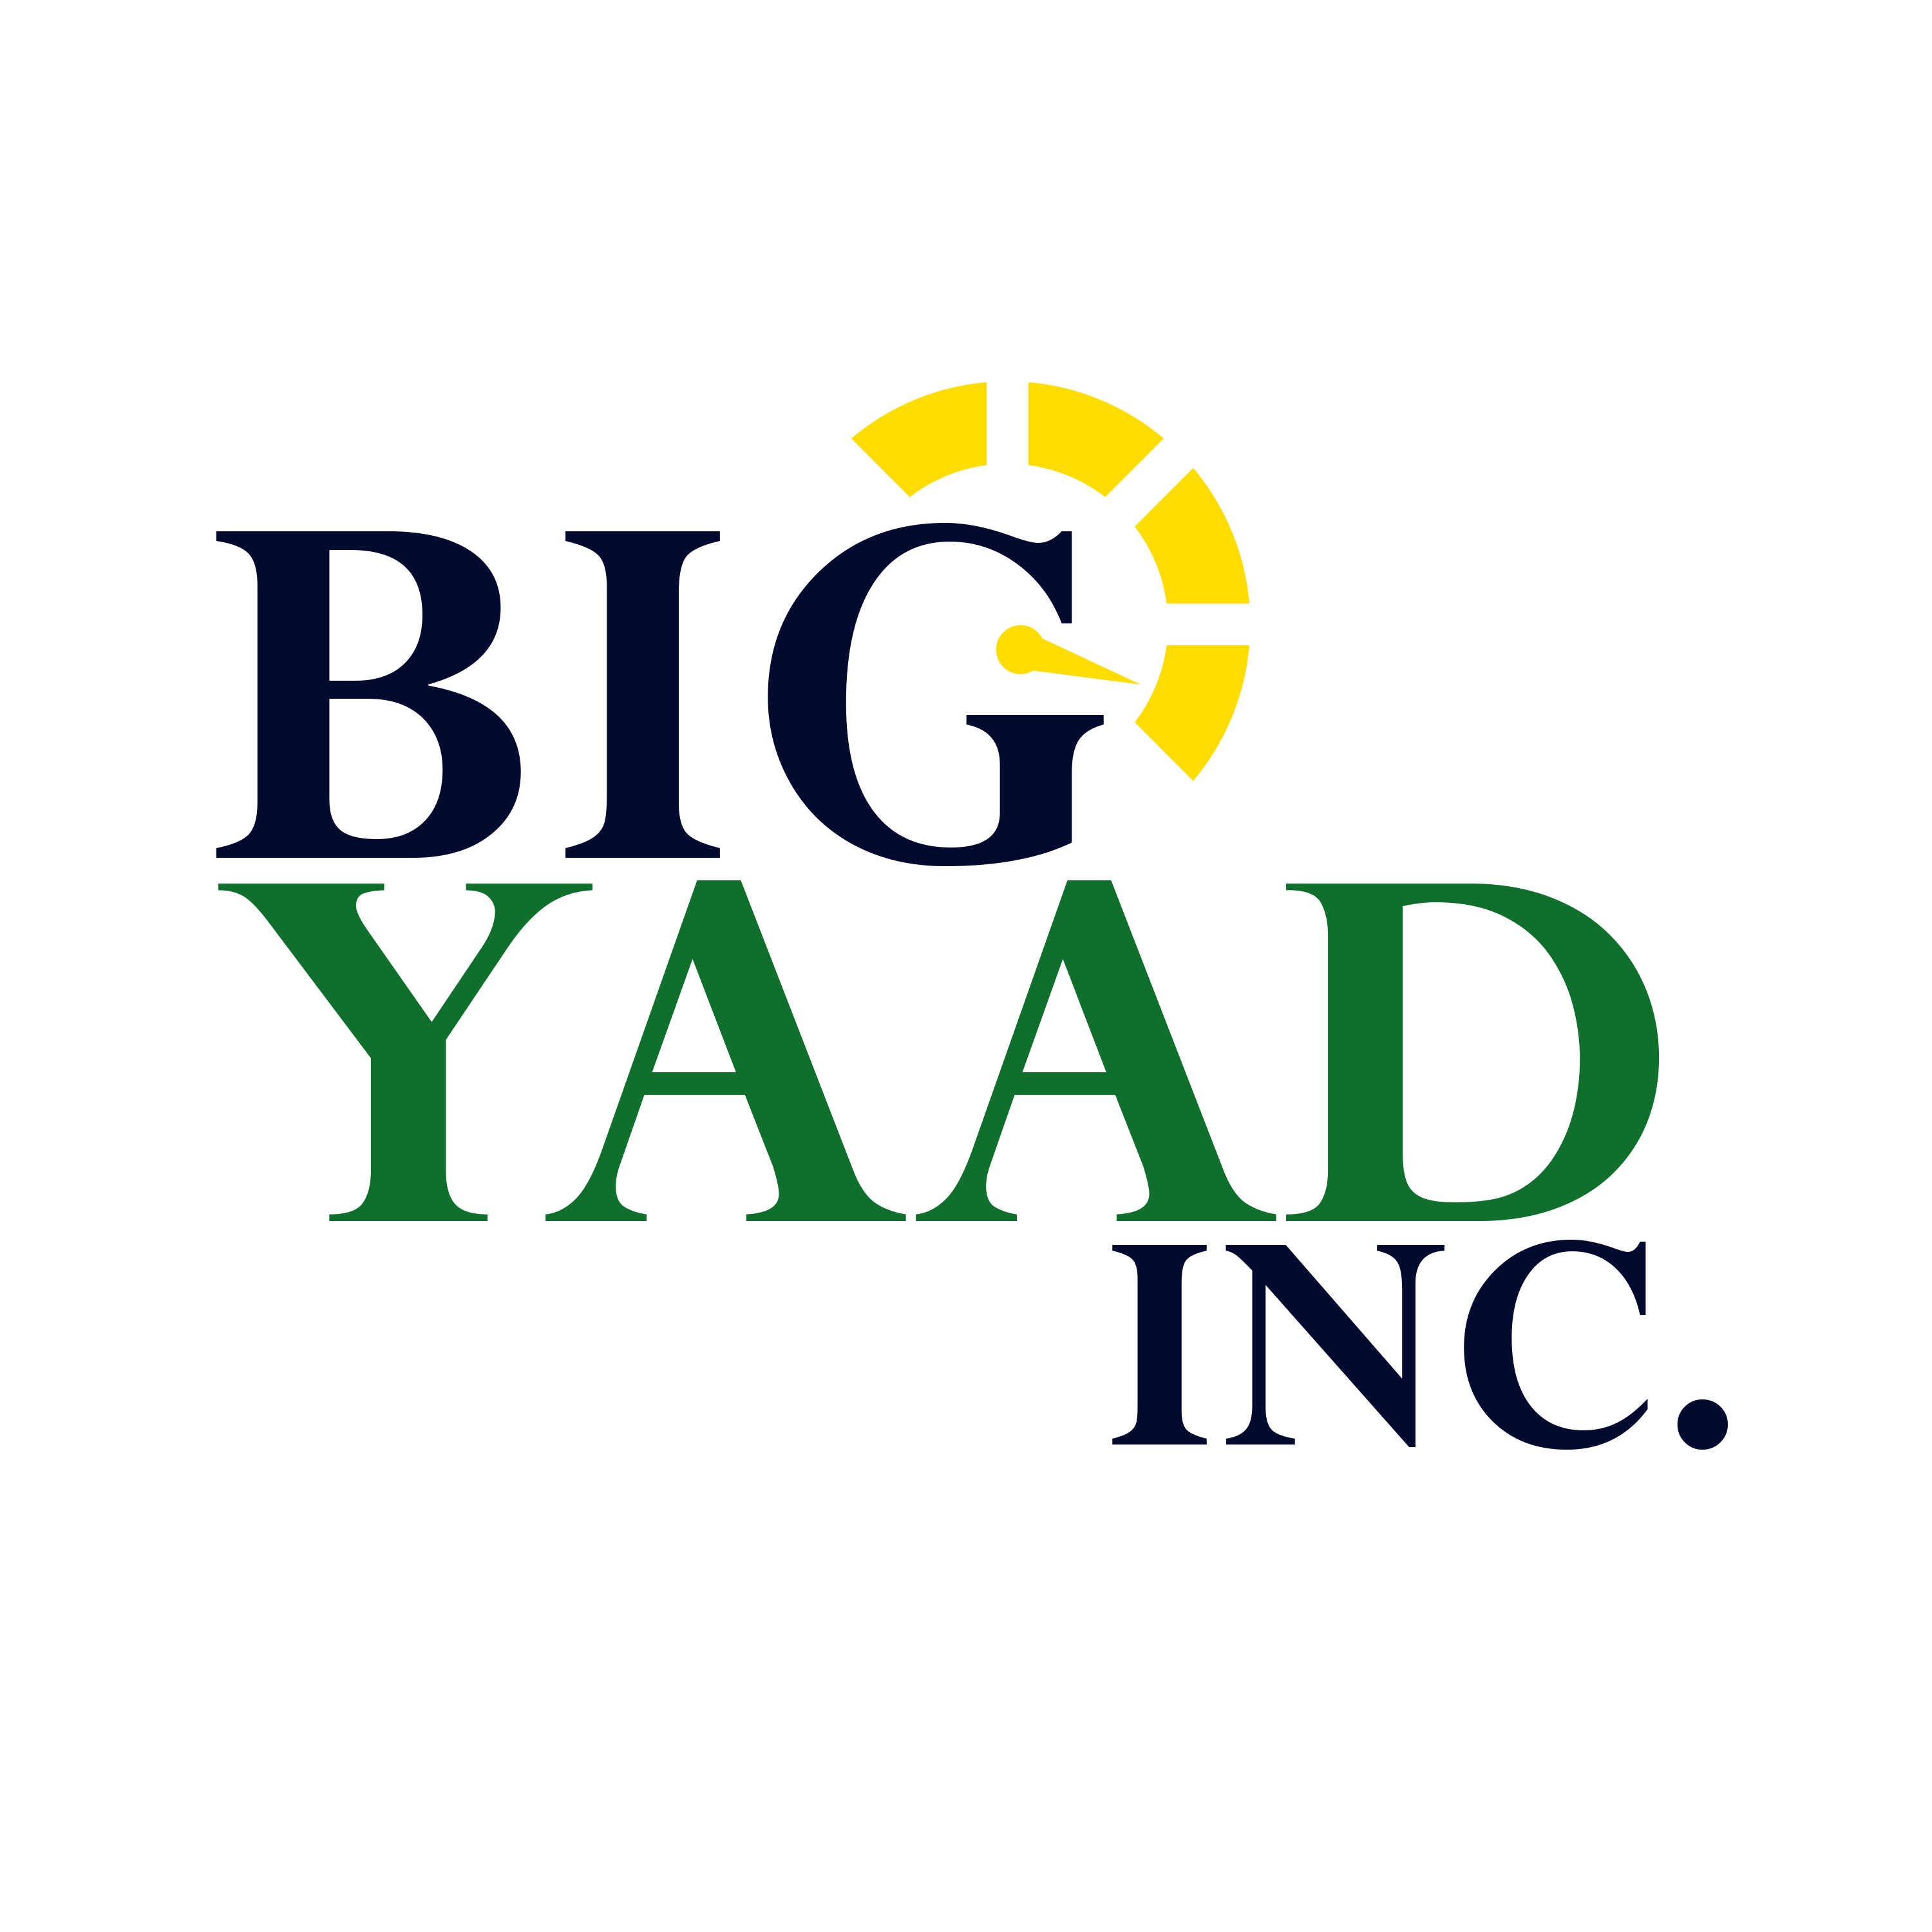 Big YAAD Inc.